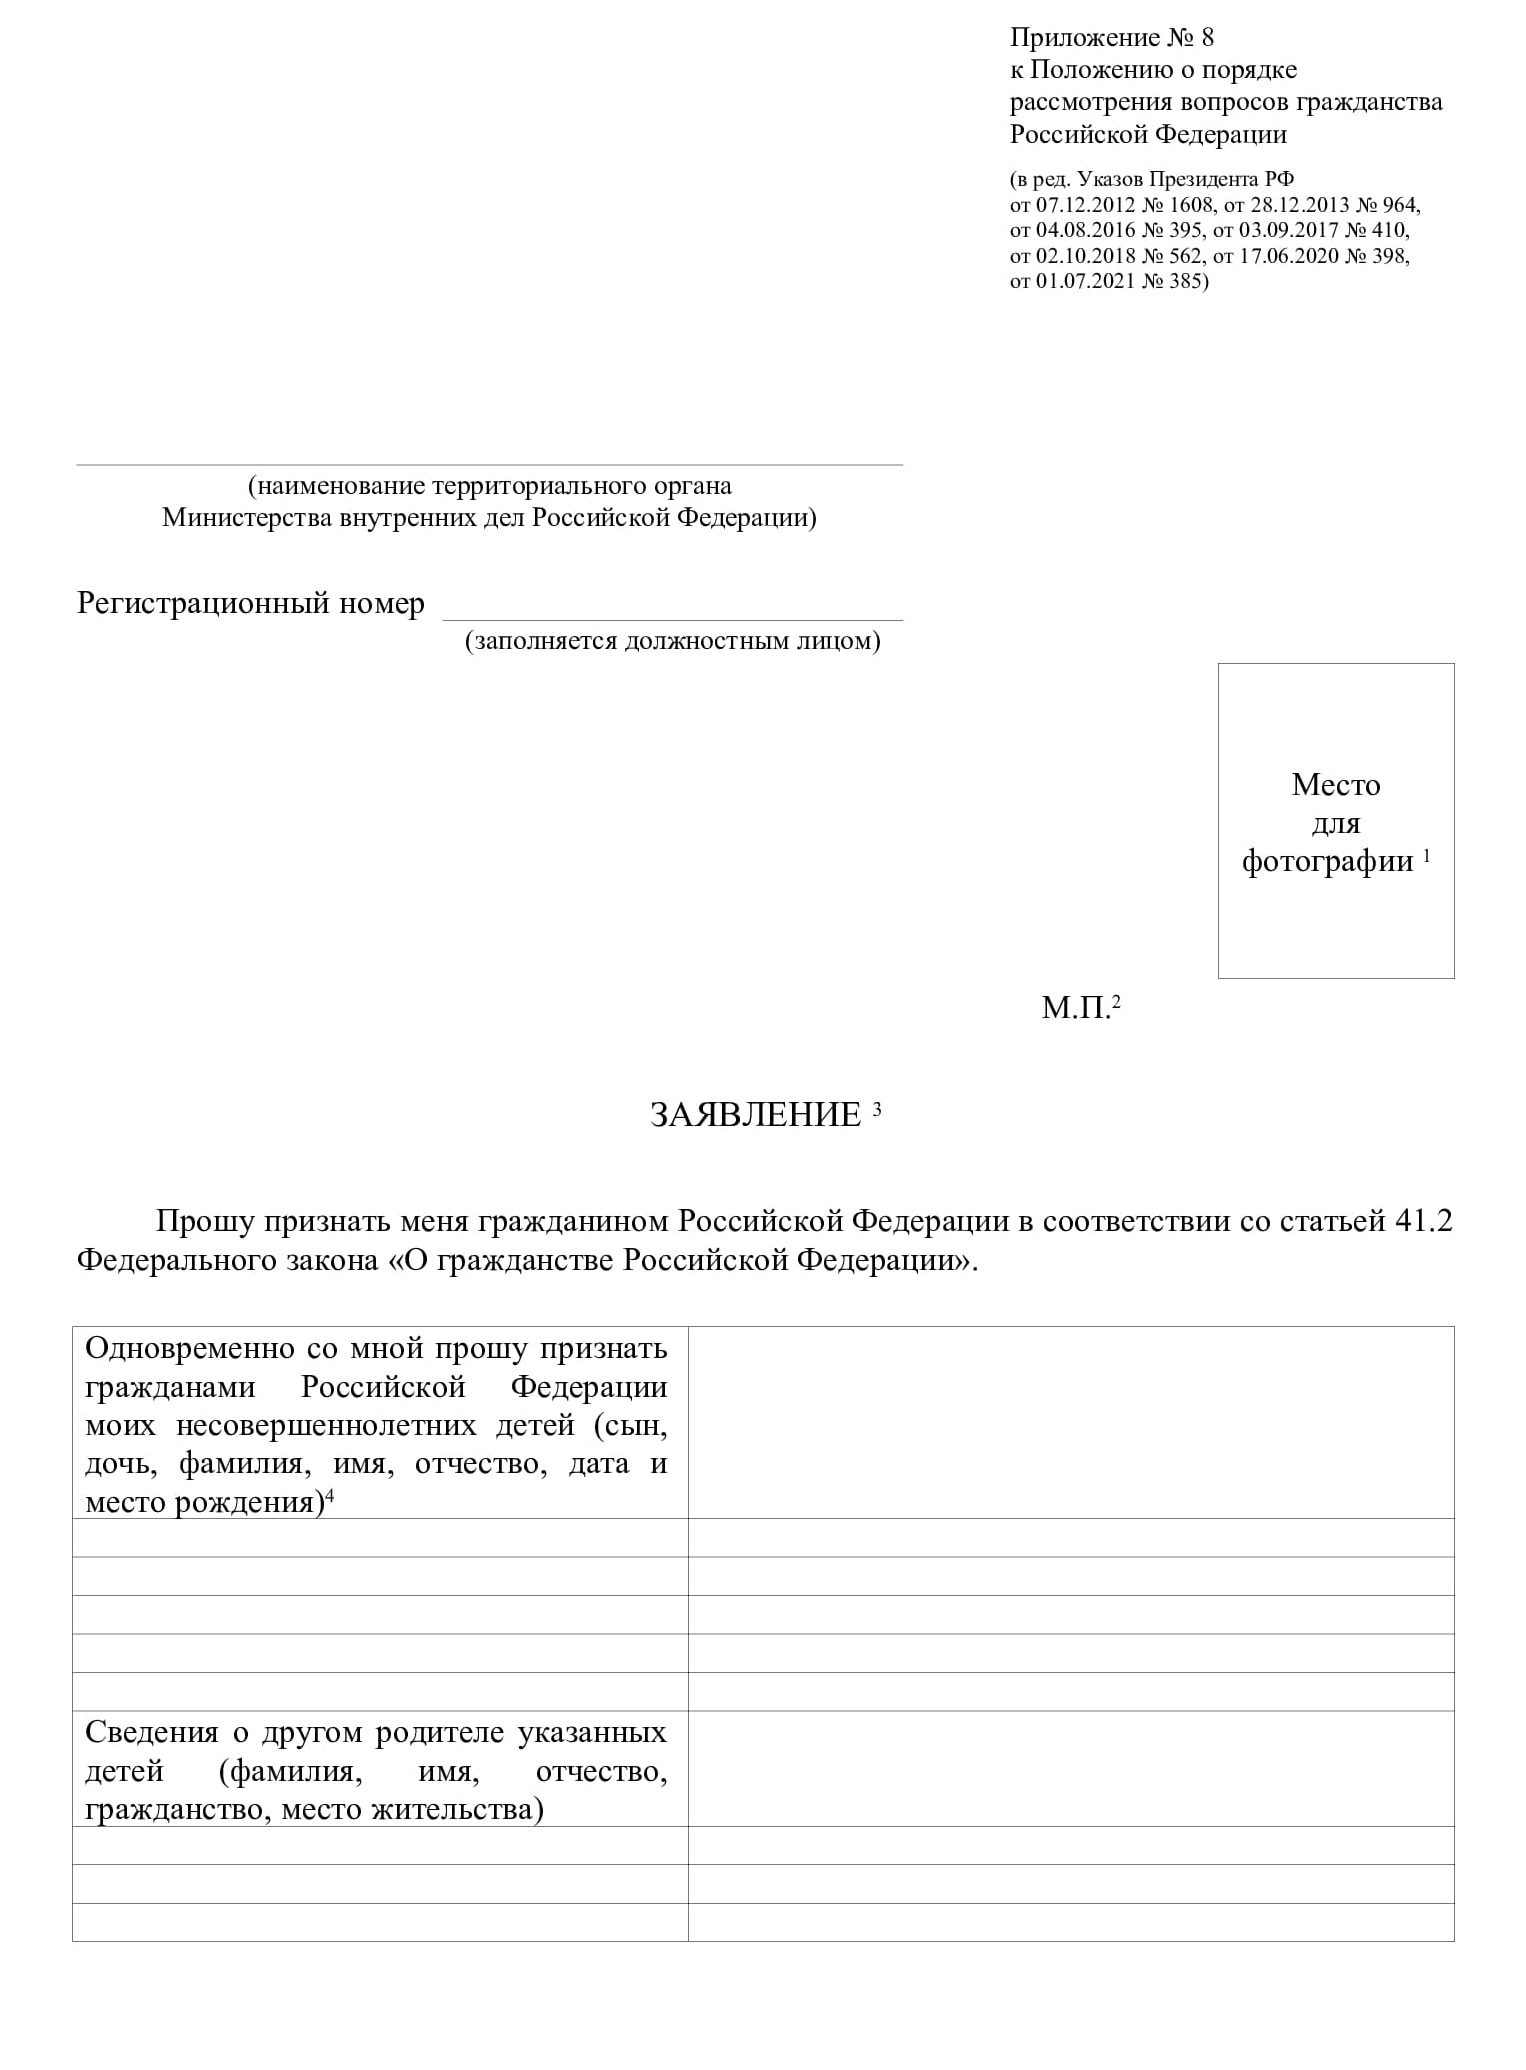 Образцы заполнения заявления на гражданство РФ на все случаи жизни